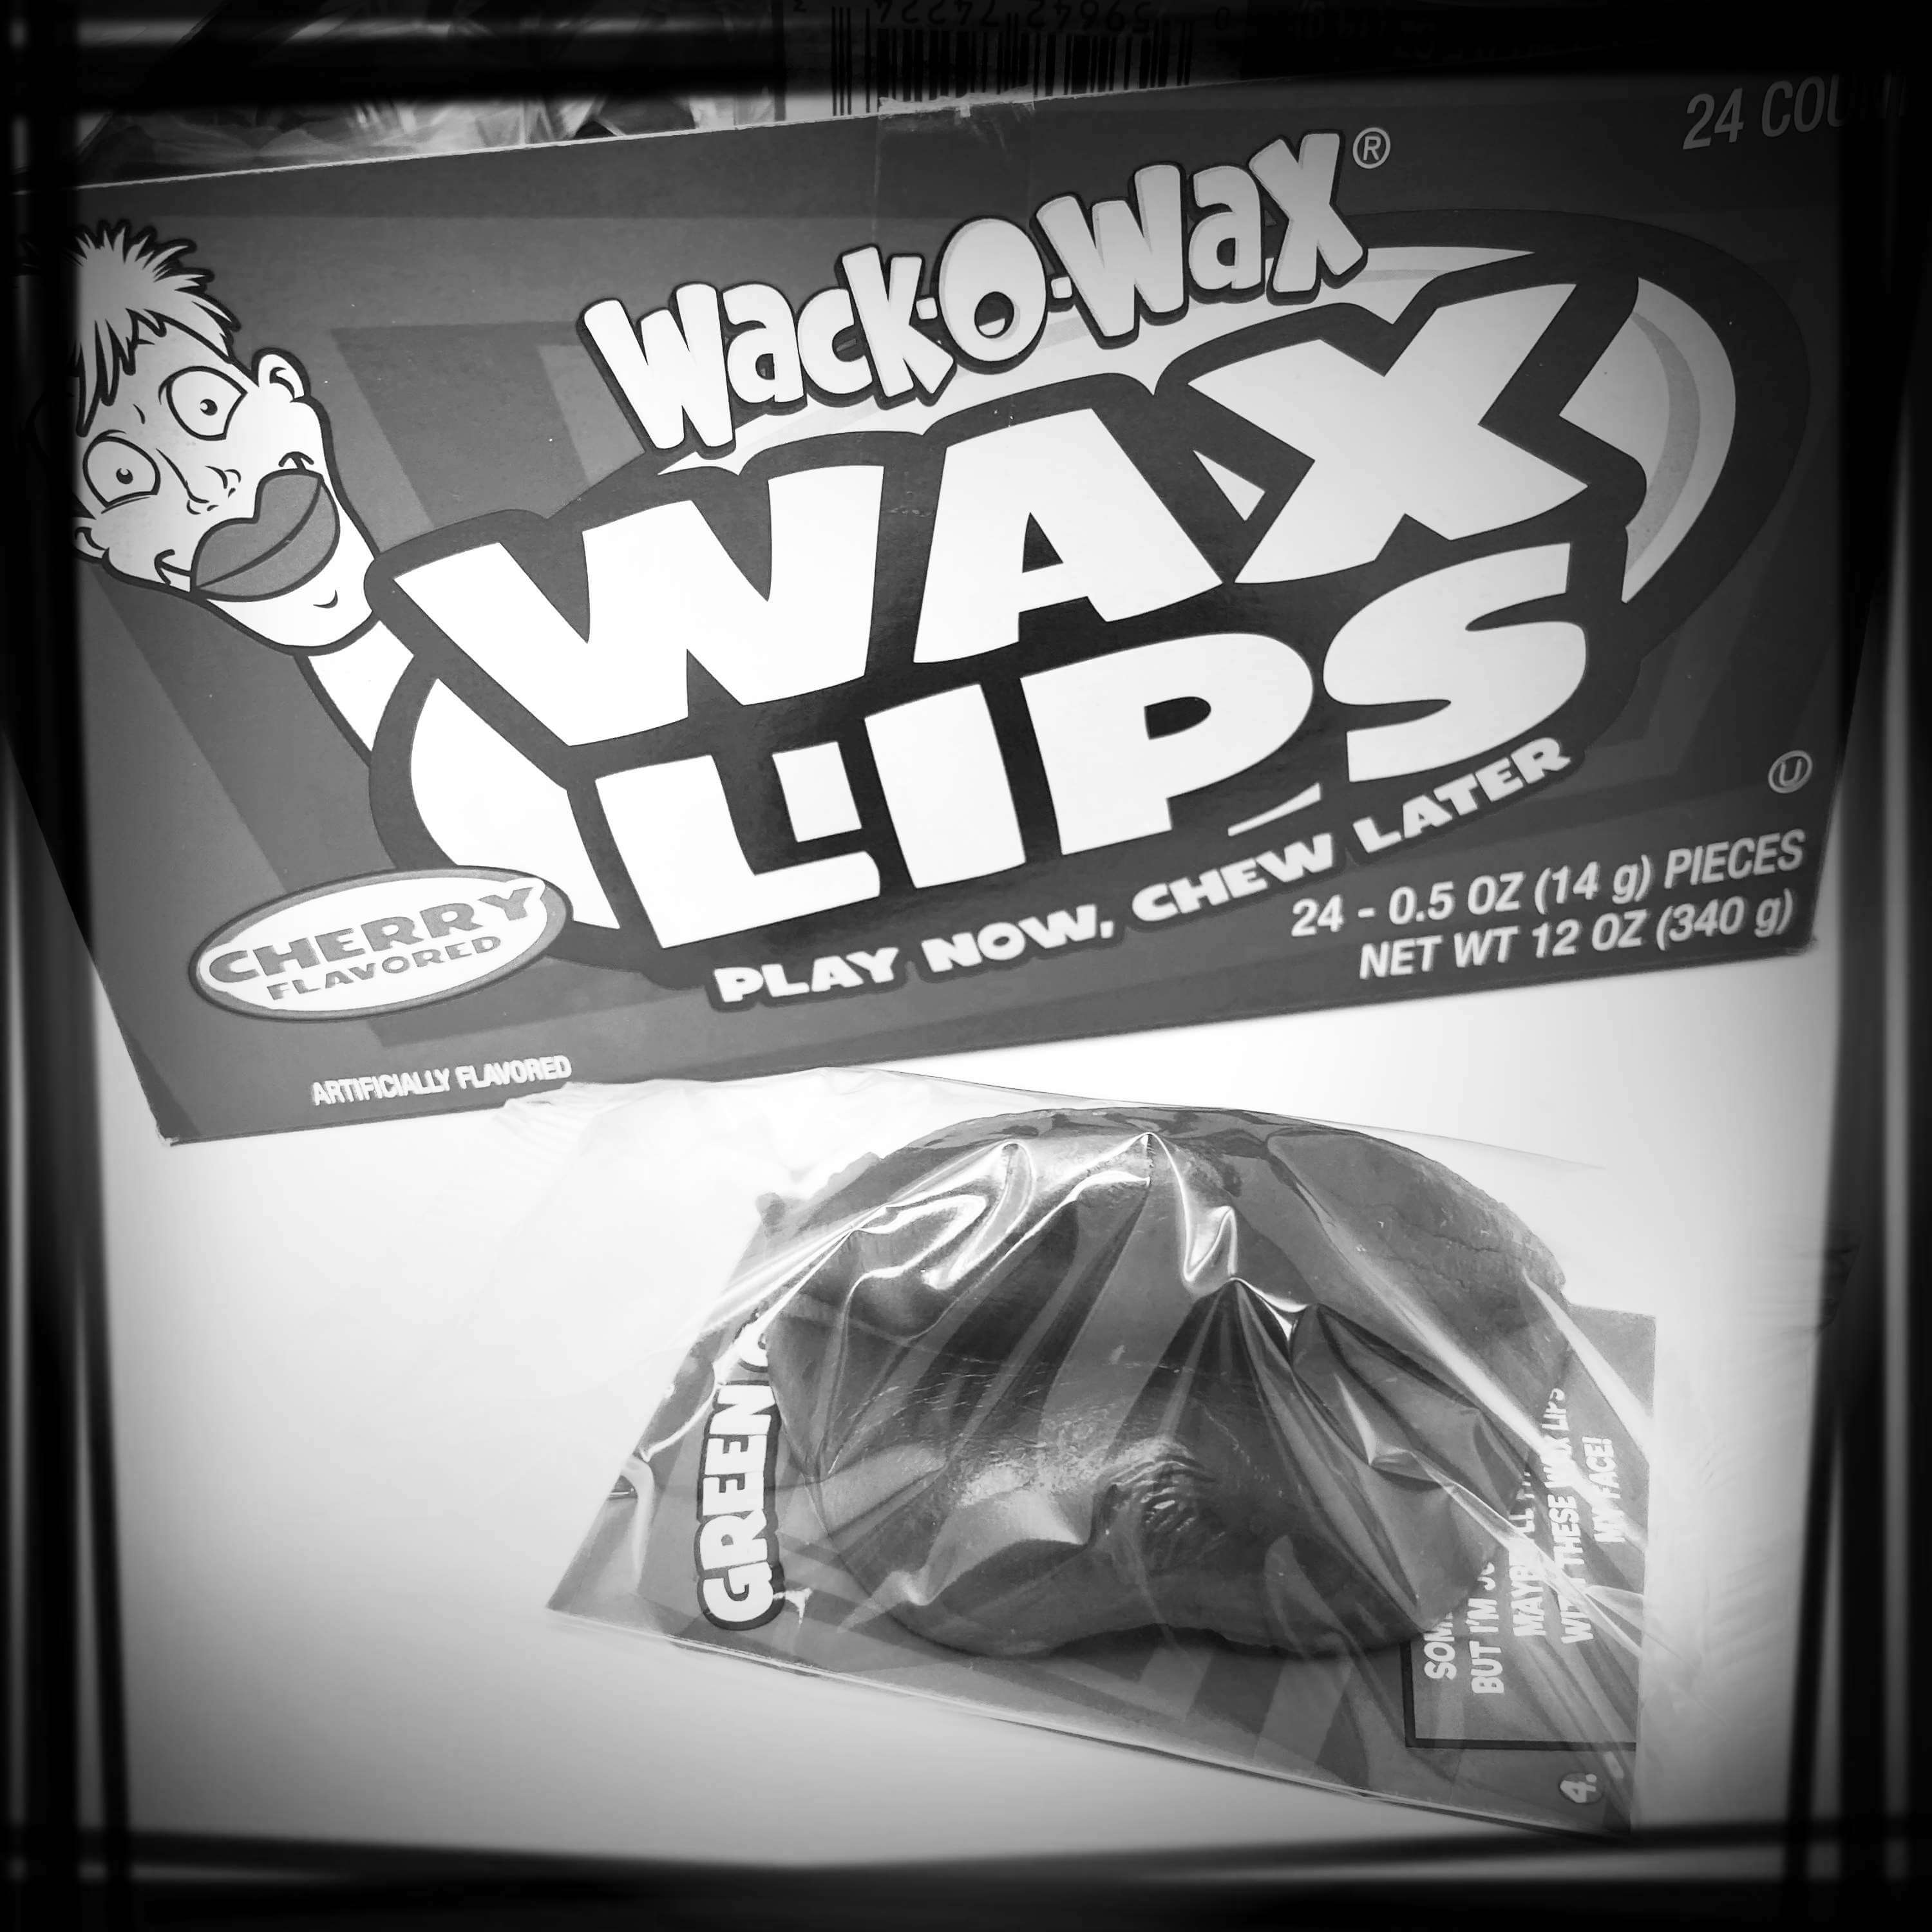 Wax Lips - Fangs - Mustaches